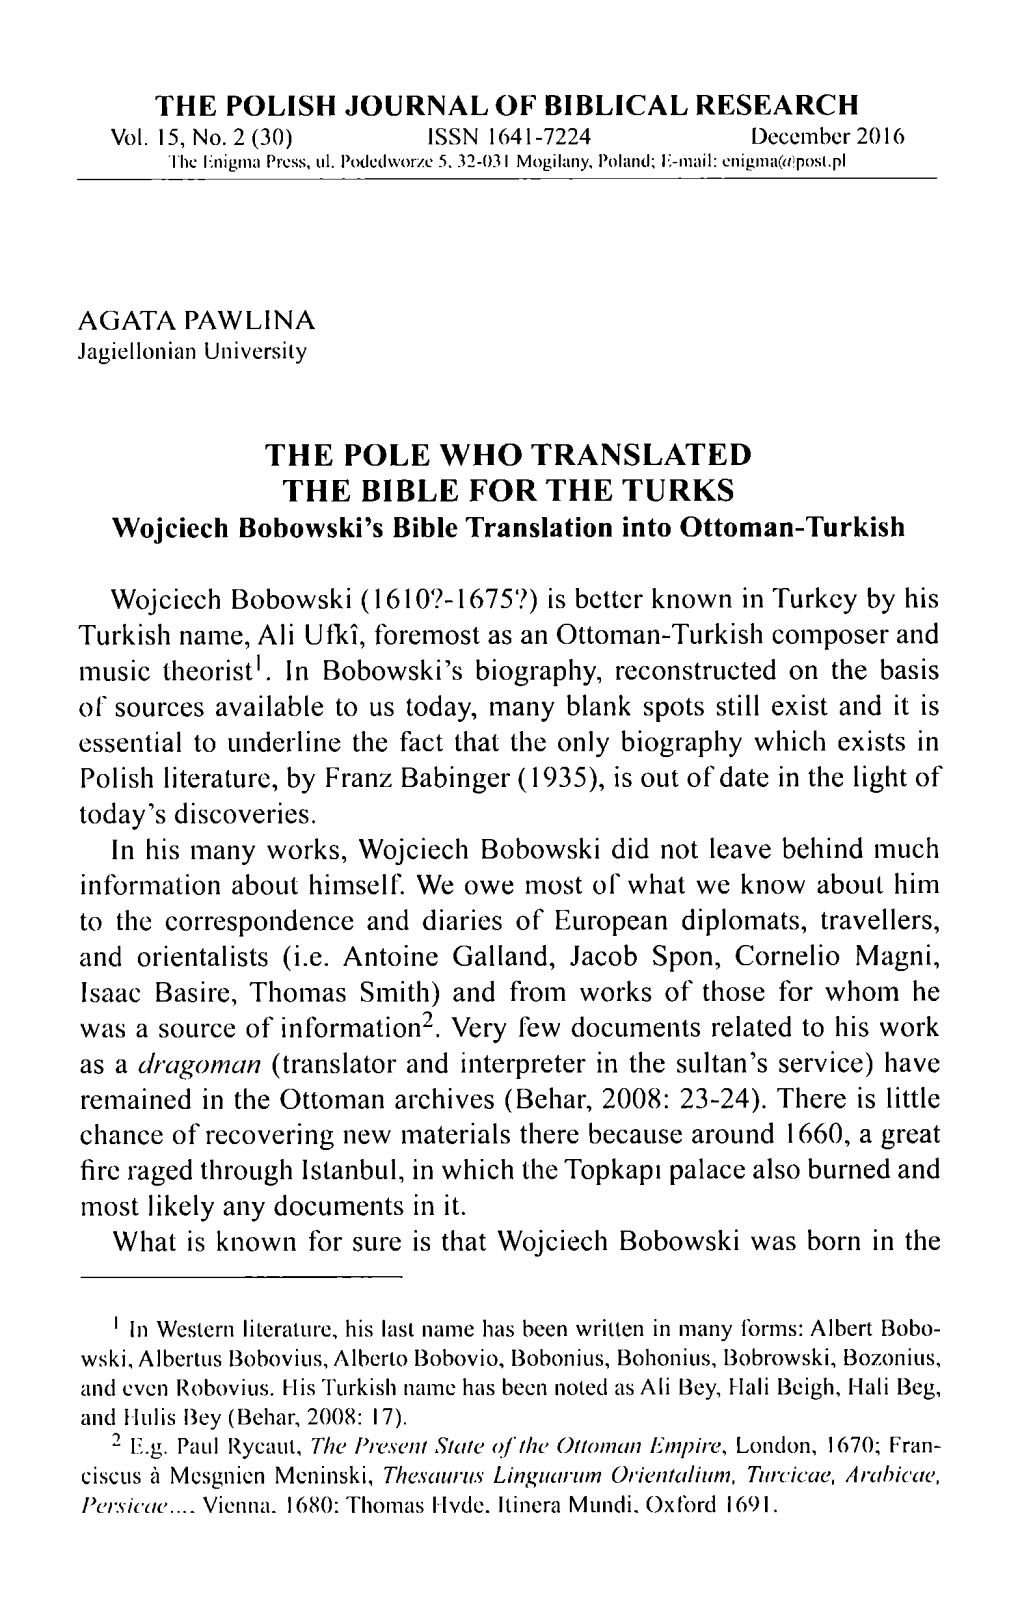 The Pole Who Translated the Bible for the Turks. Wojciech Bobowski's